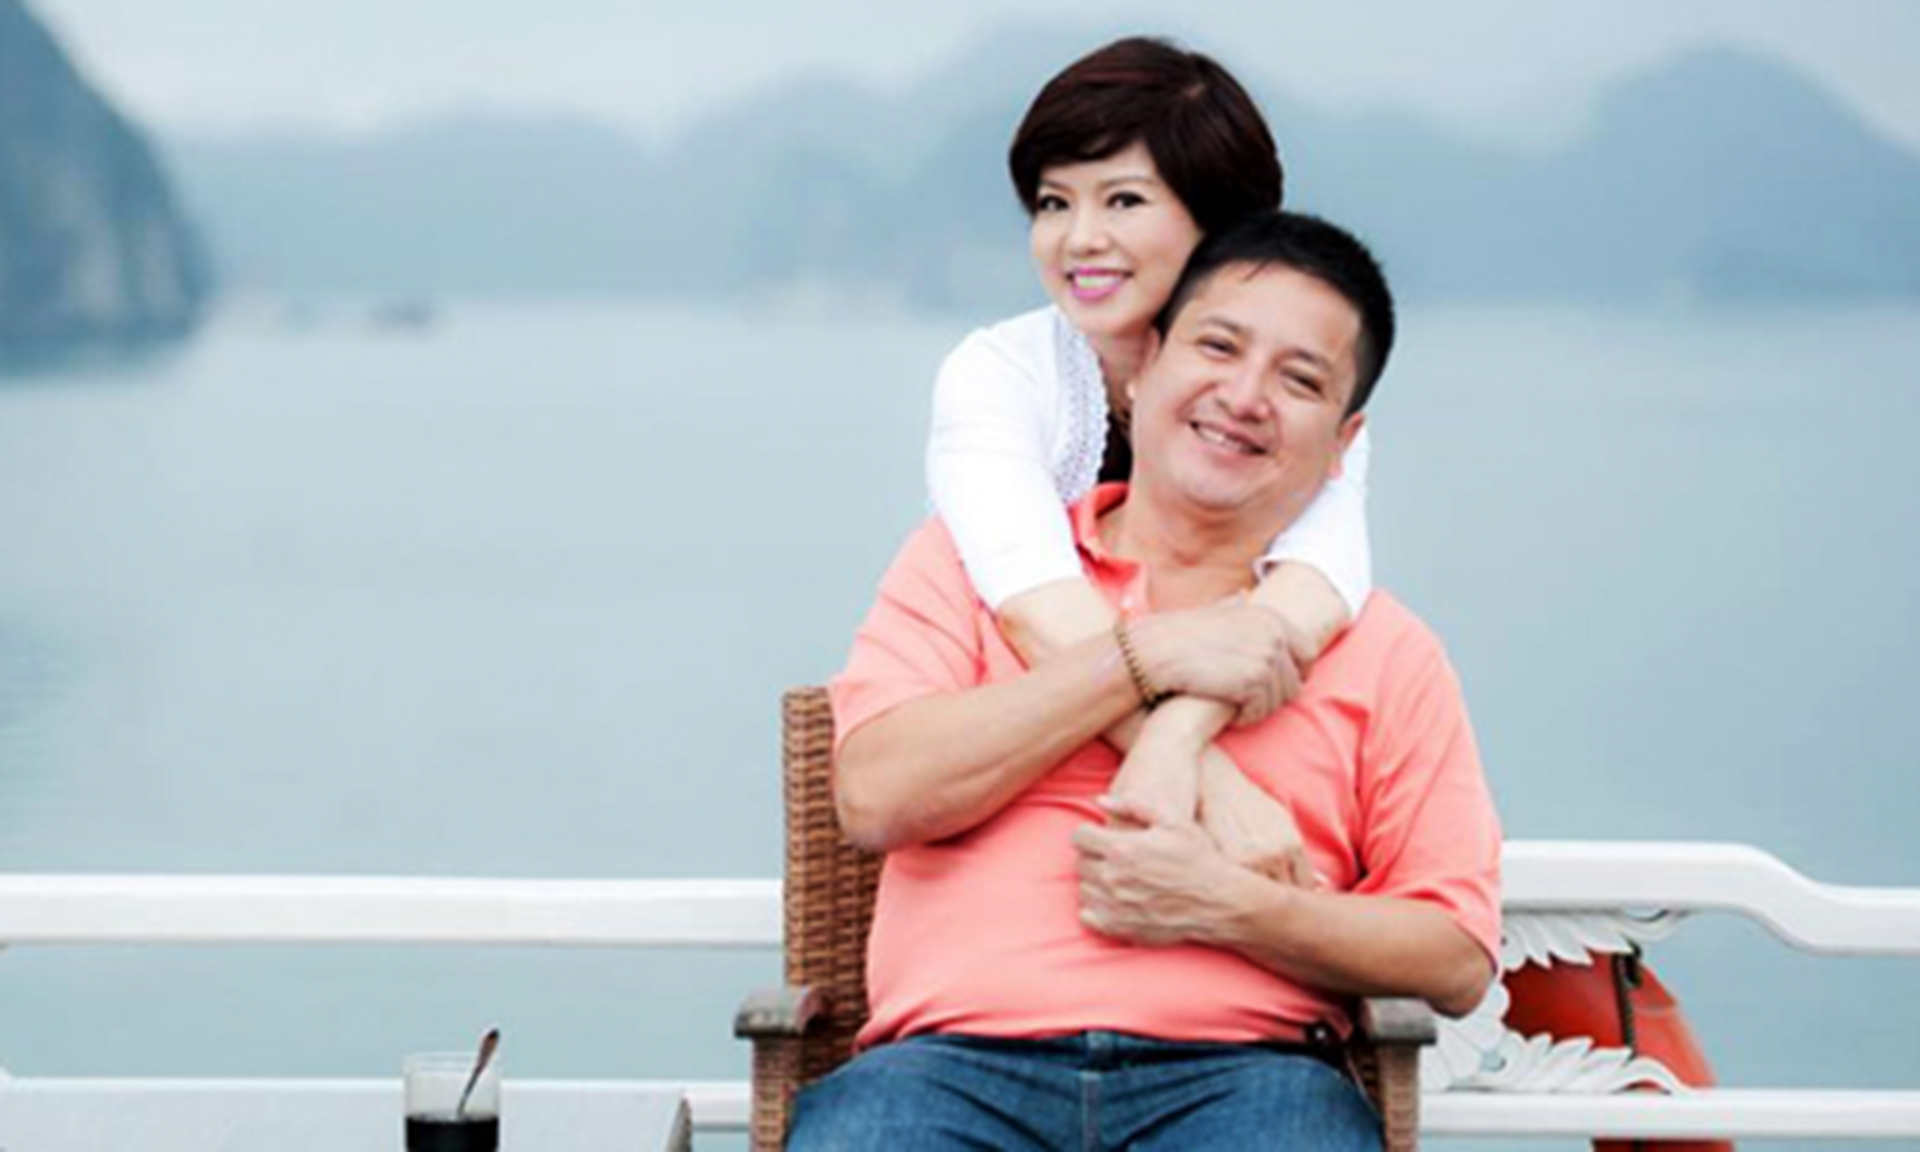 Cặp vợ chồng nghệ sĩ Chí Trung - Ngọc Huyền được ngưỡng mộ vì đã bên nhau 39 năm và kết hôn hơn 30 năm mà vẫn hạnh phúc tình cảm